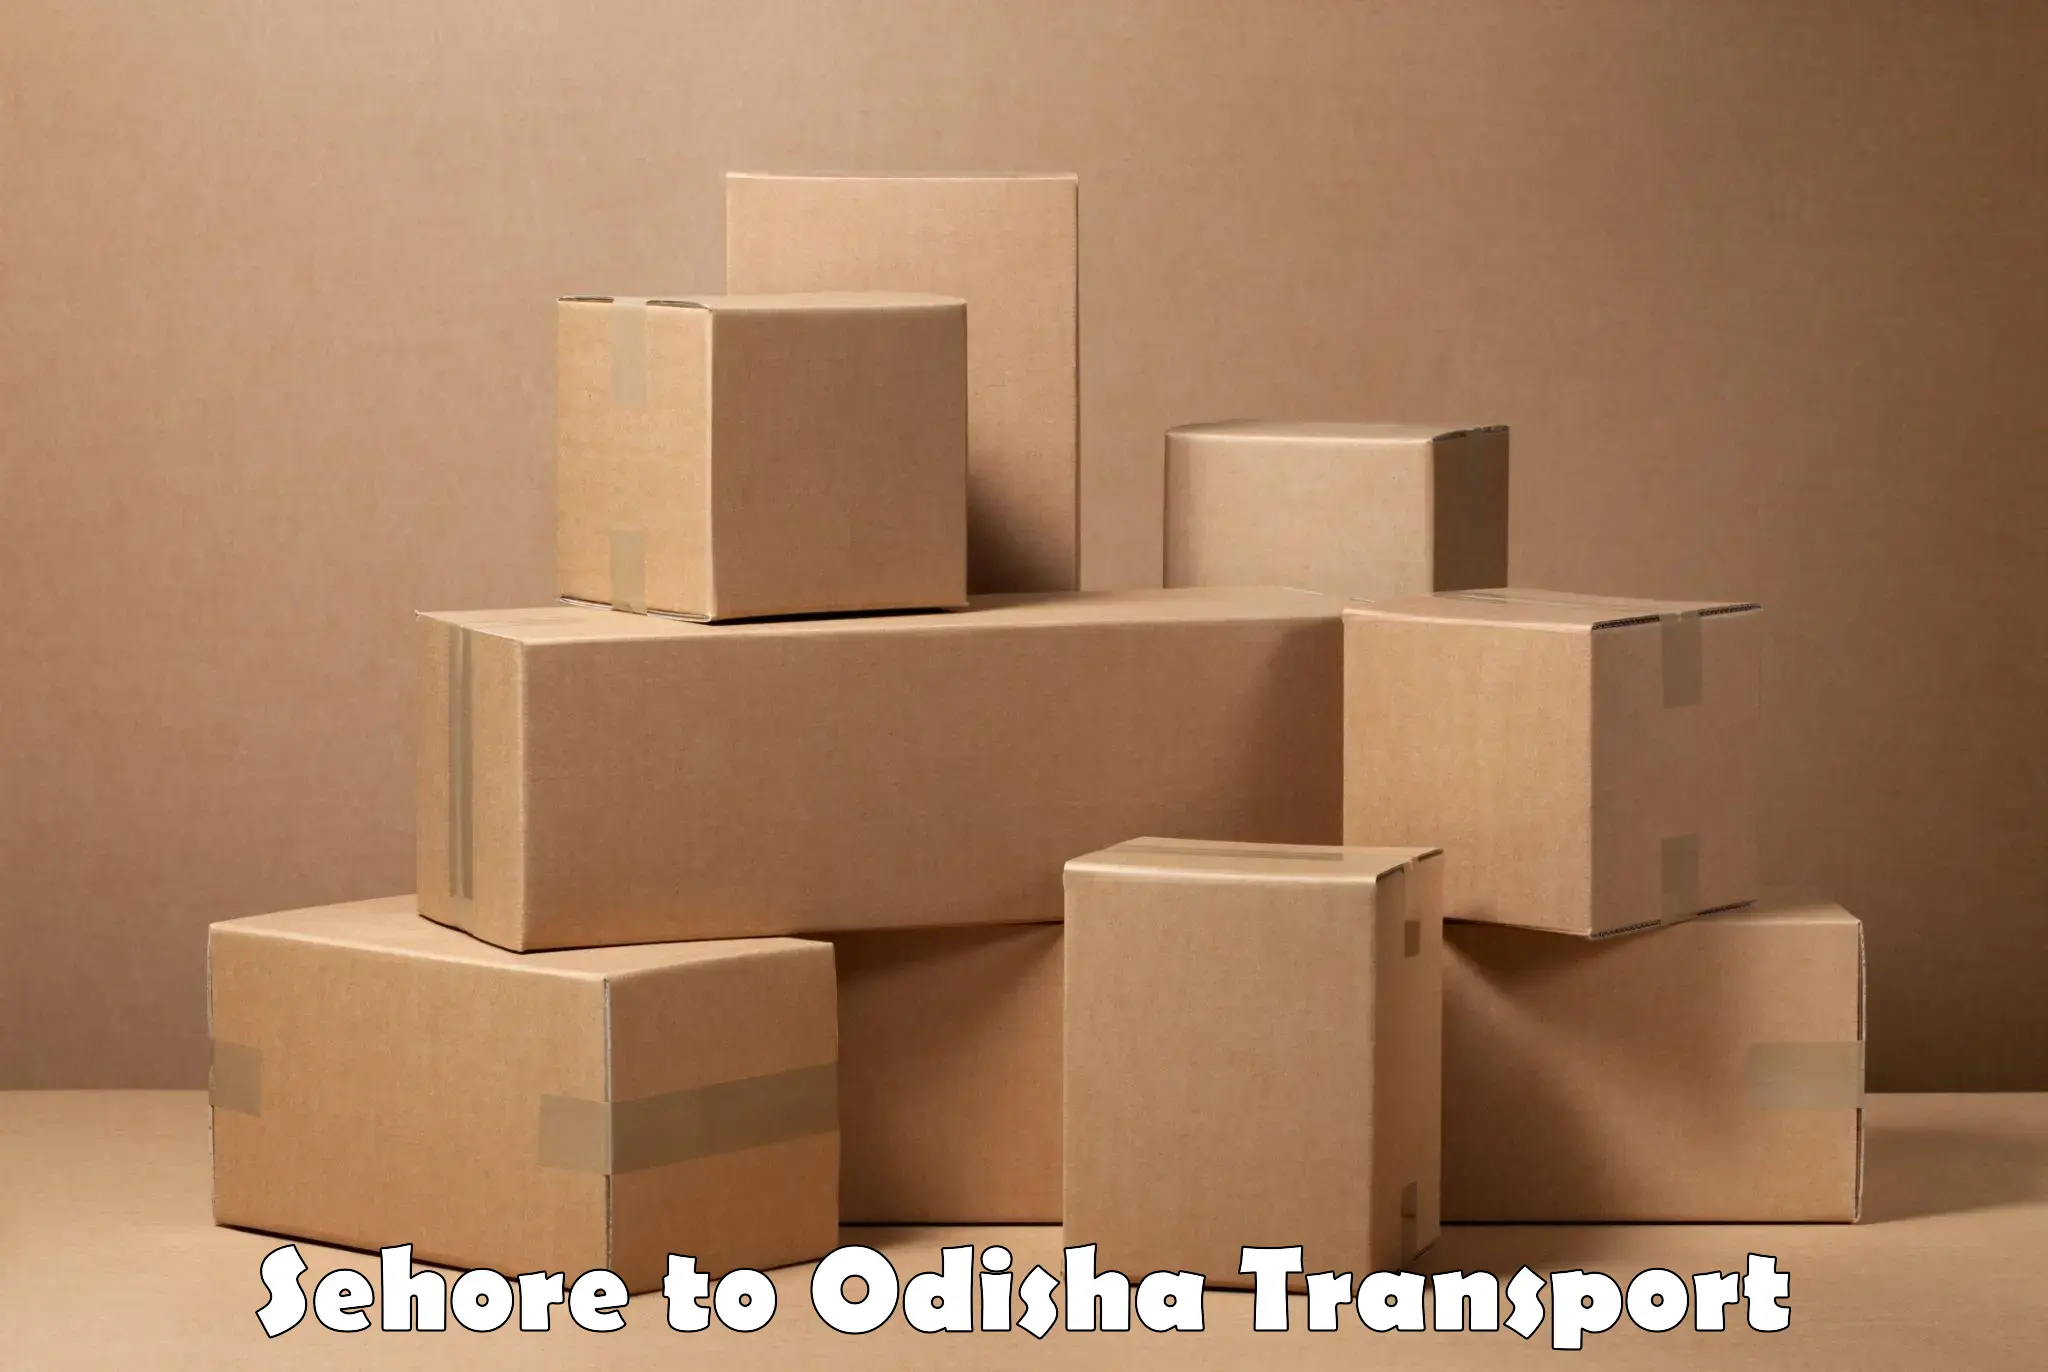 Daily transport service Sehore to Odisha